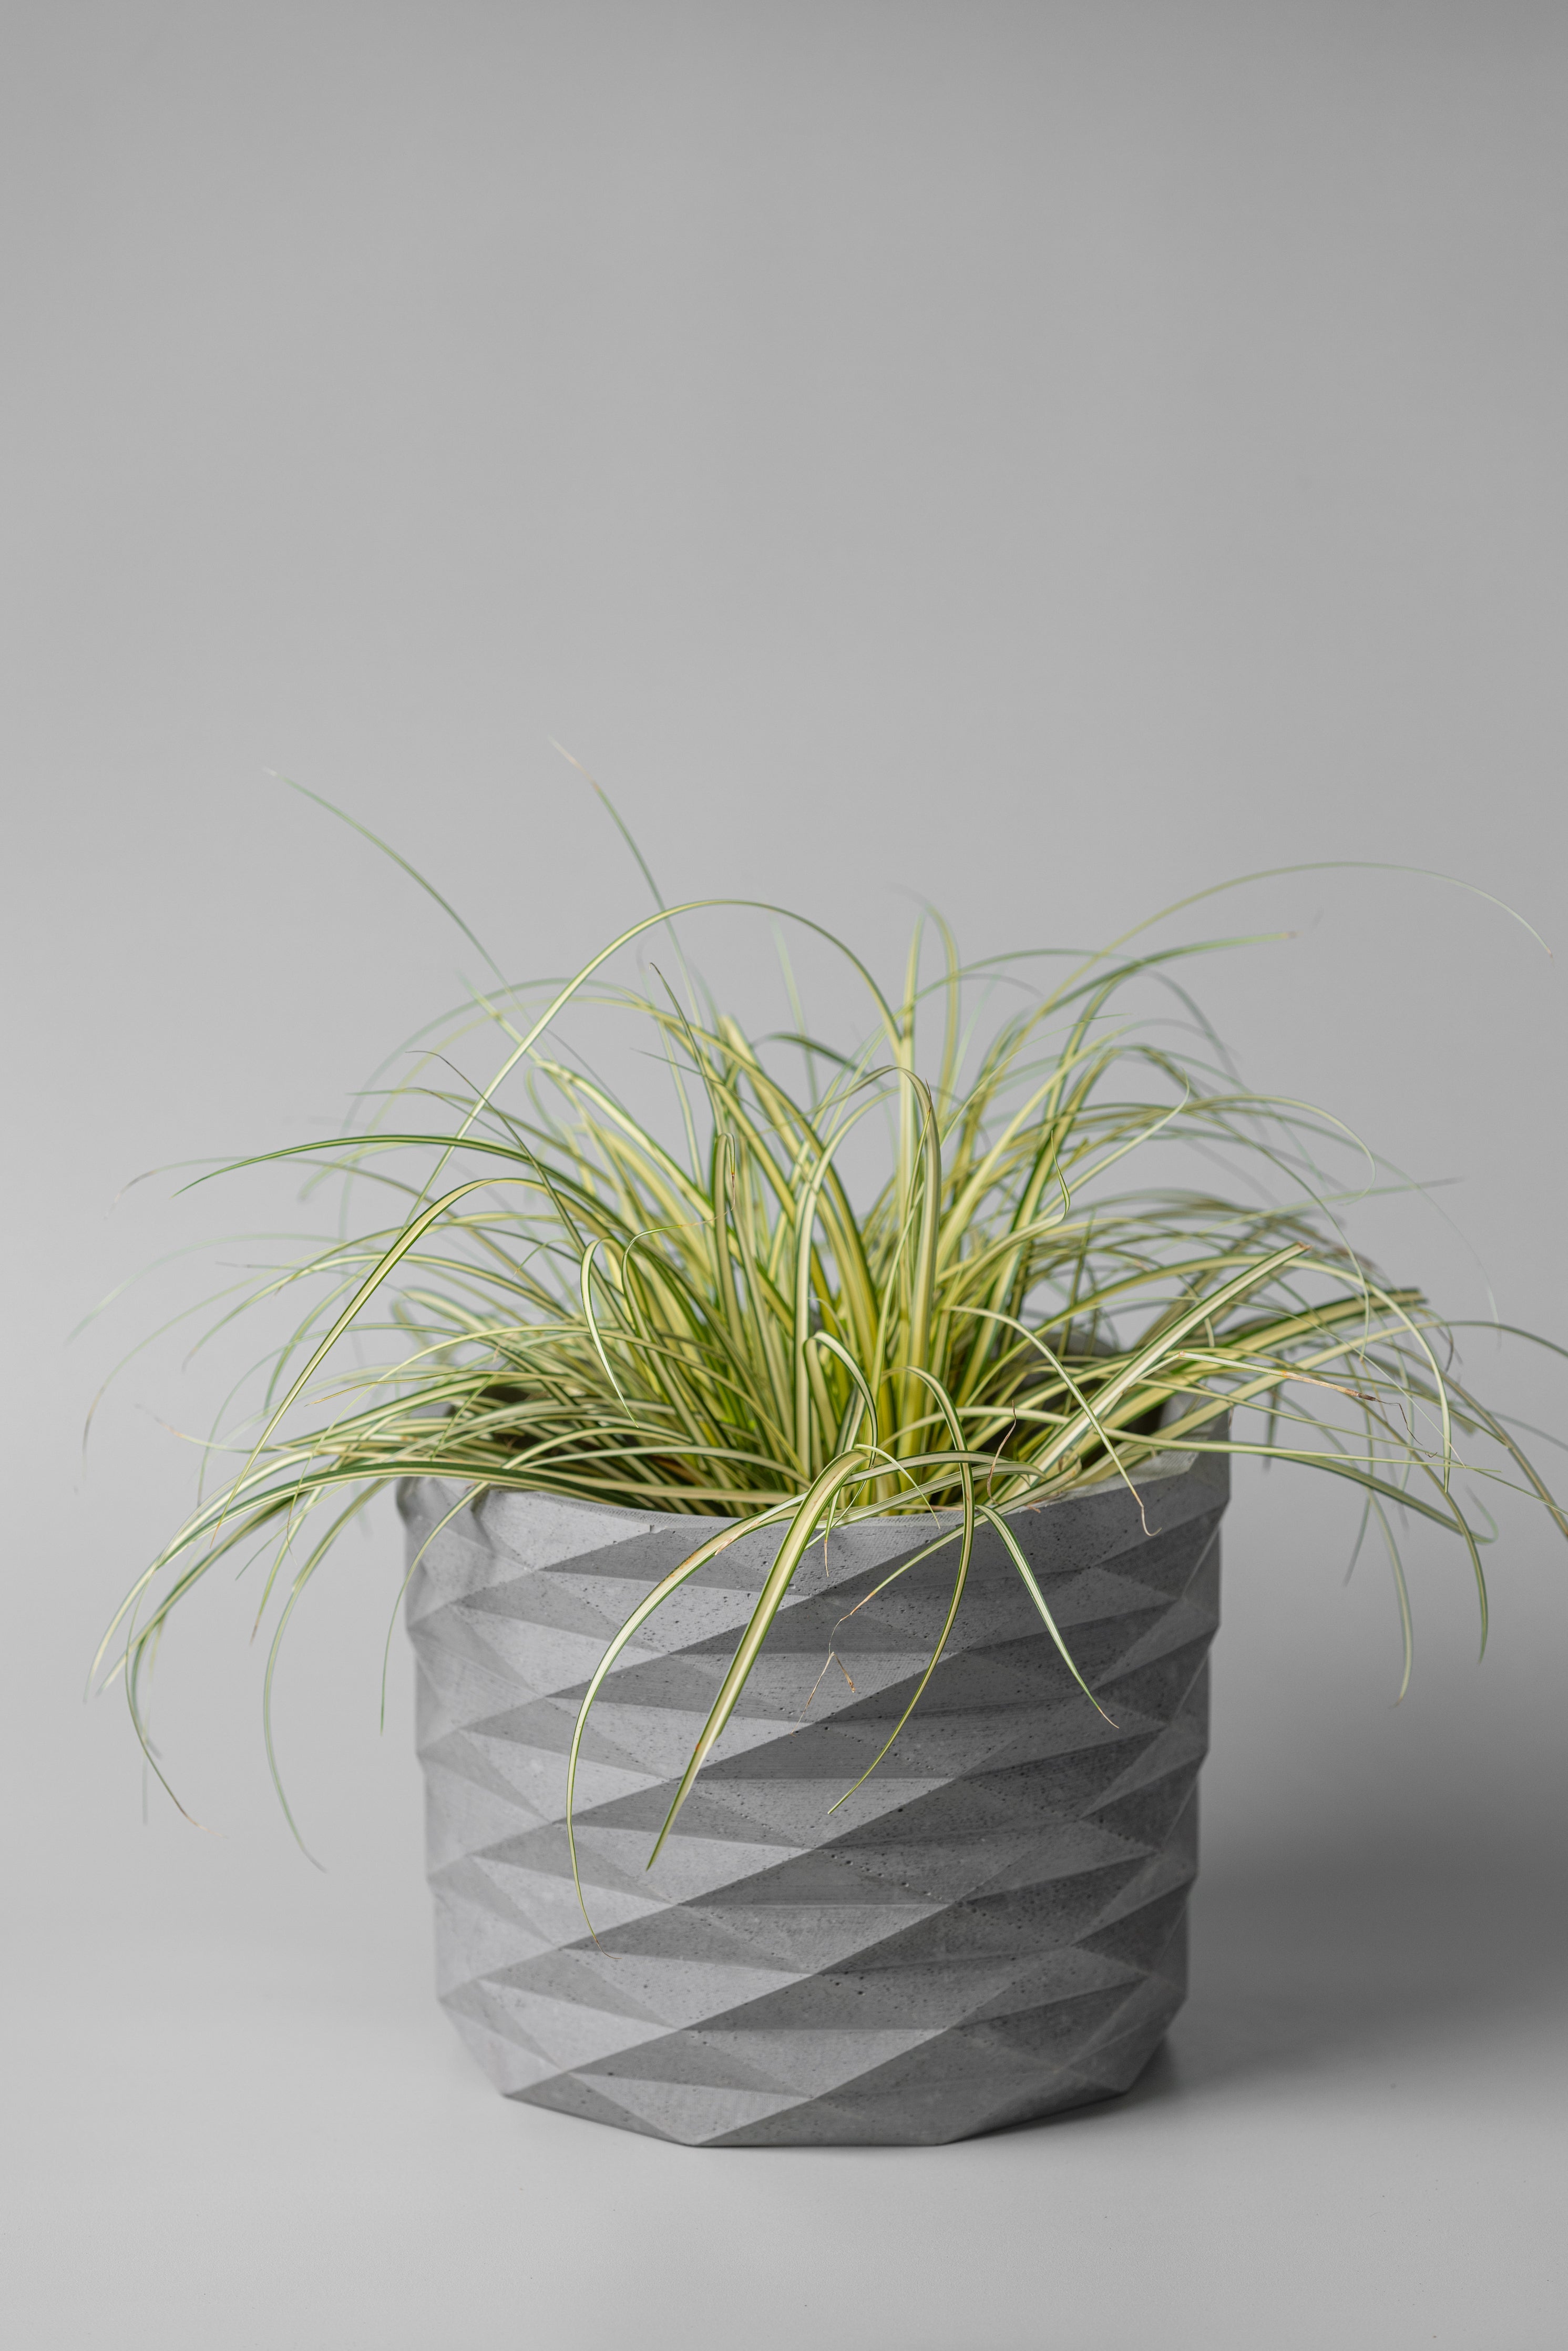 7" gray prickly concrete planter